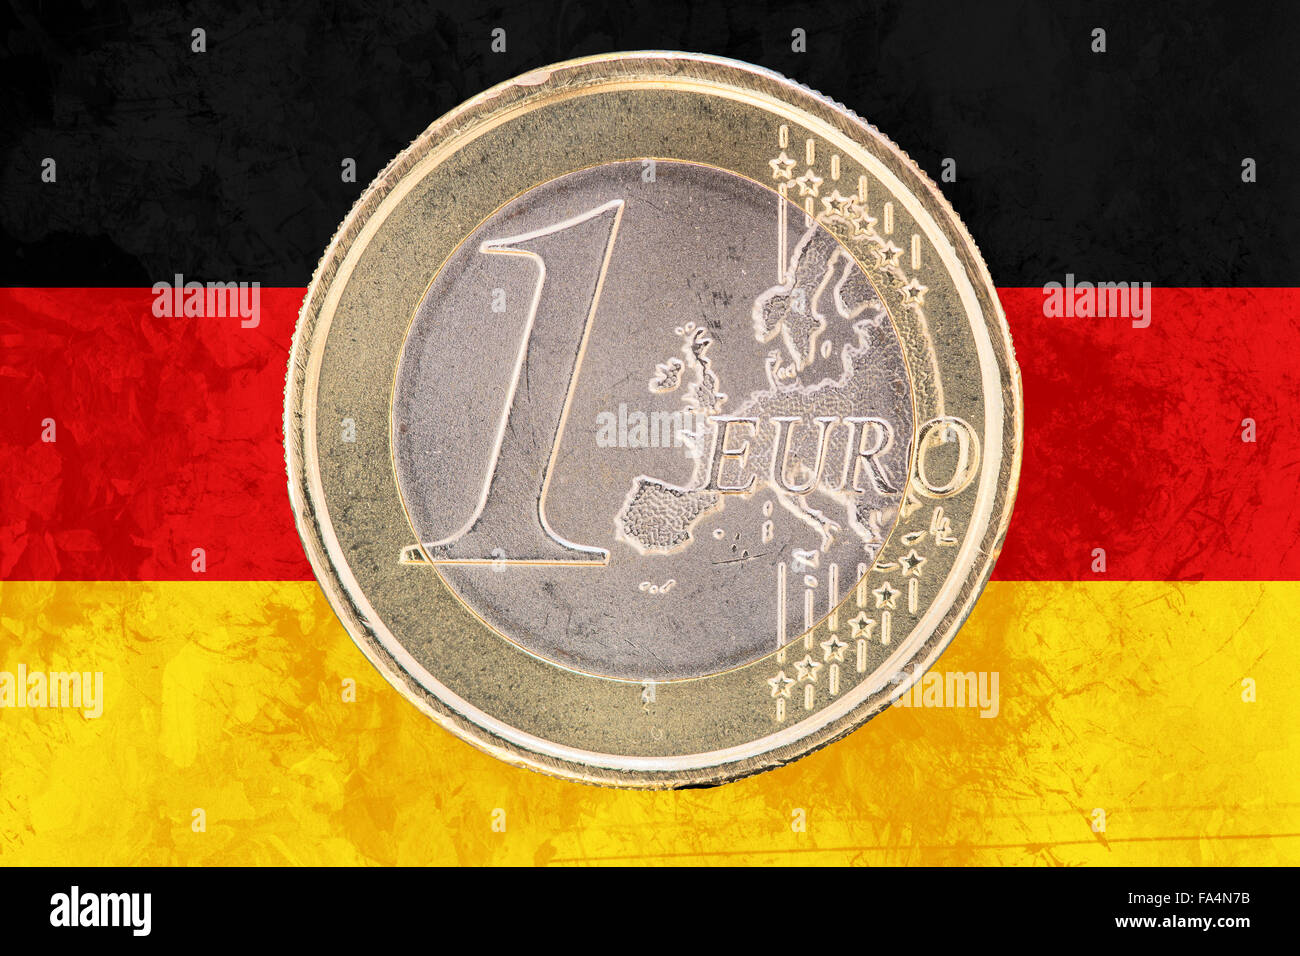 Face commune des pièces d'un euro de l'Allemagne national isolé sur le drapeau allemand en arrière-plan Banque D'Images